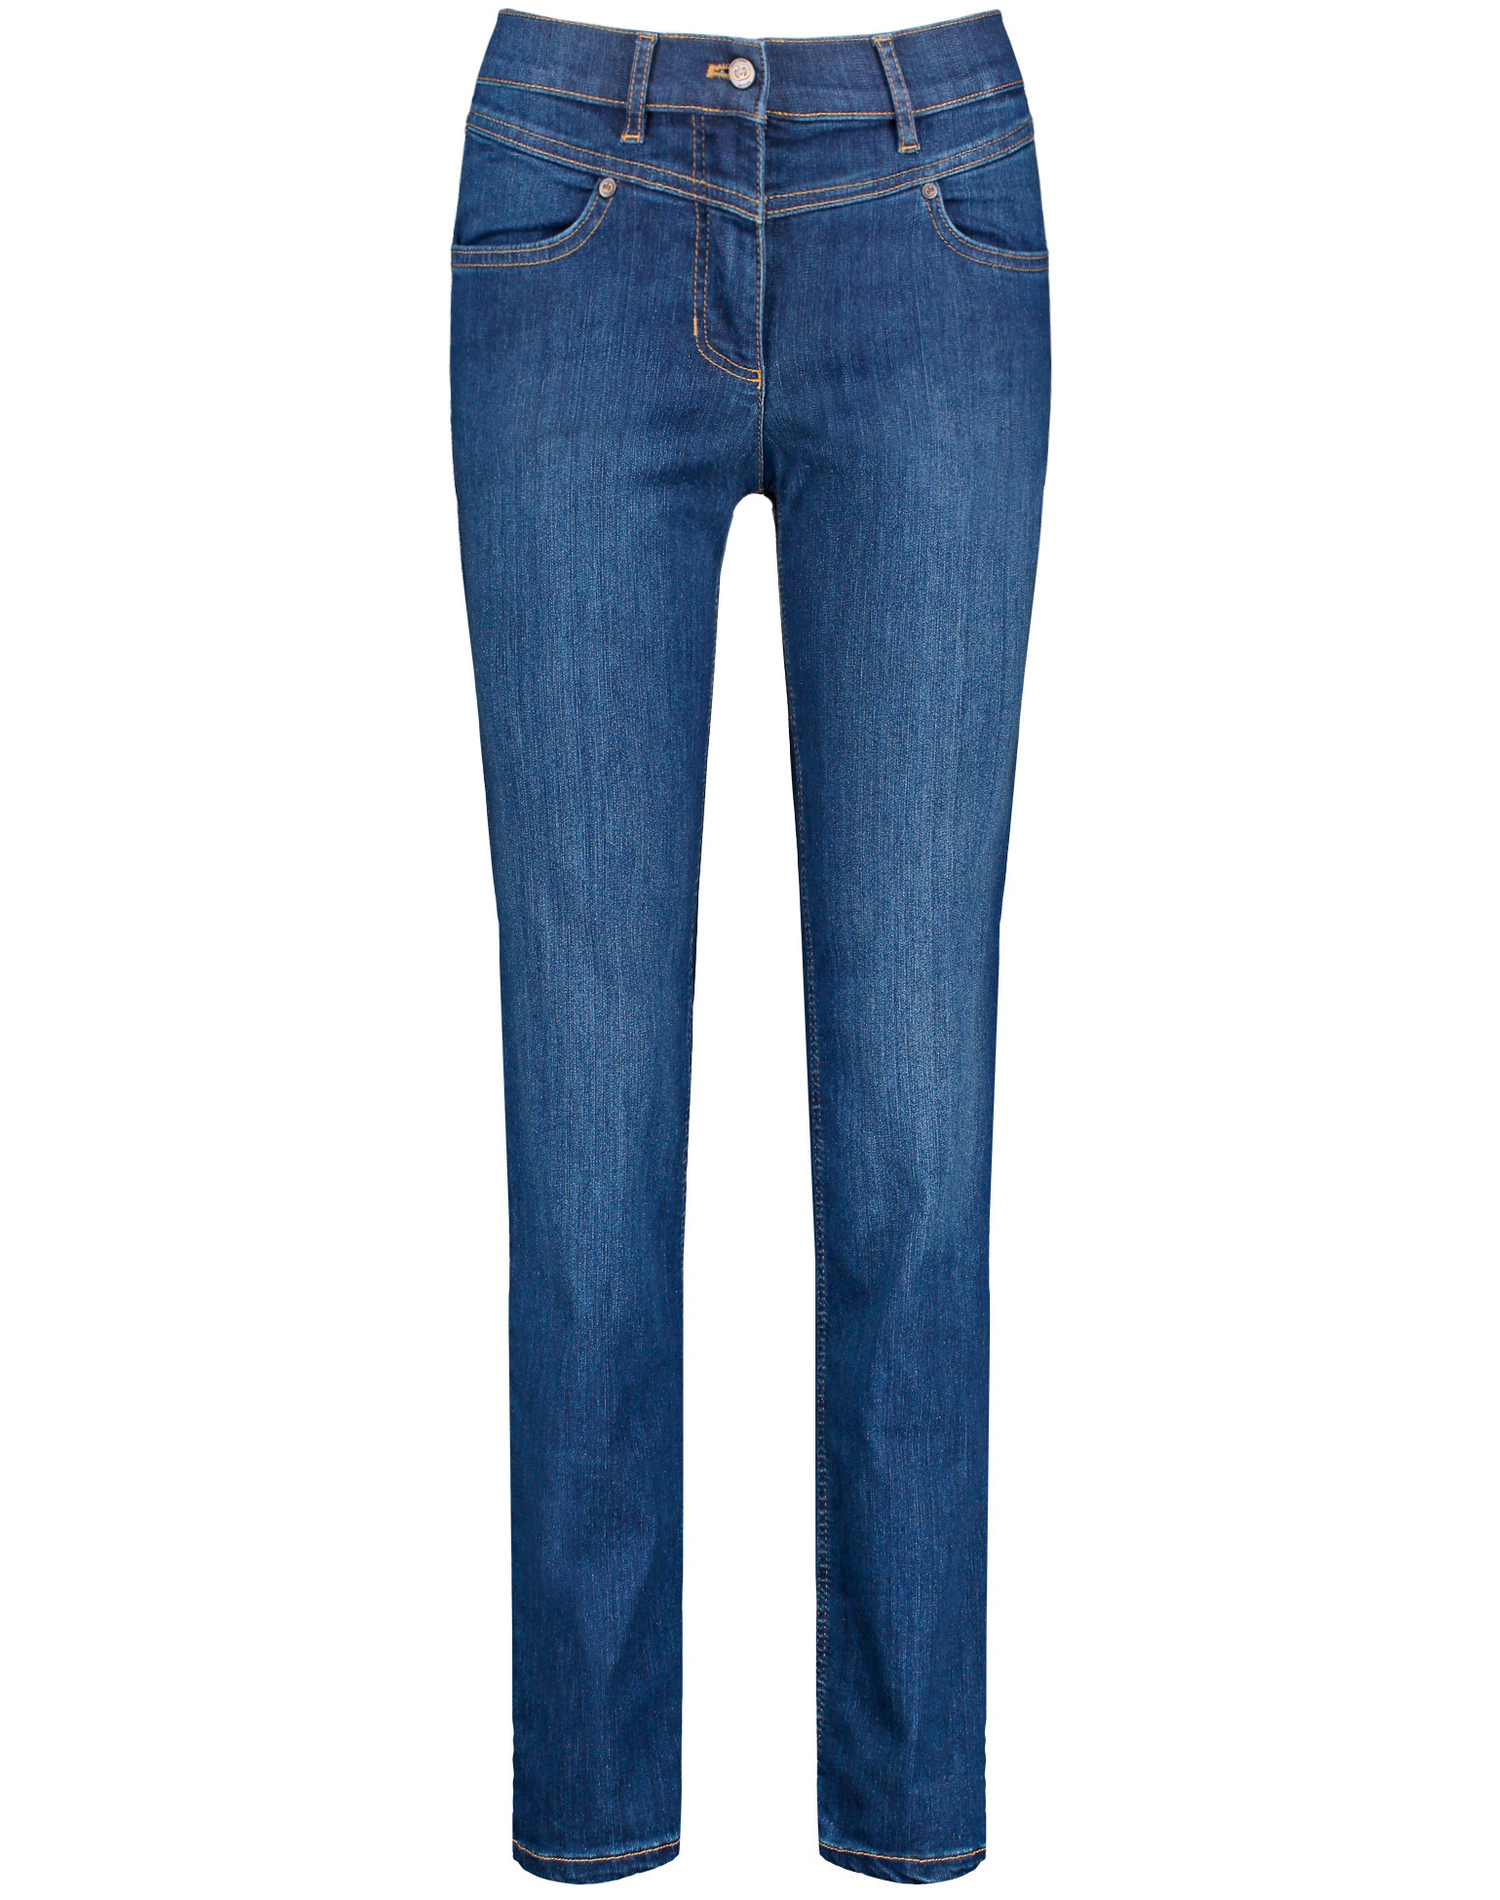 GERRY WEBER Jeans Best4me in Blau 